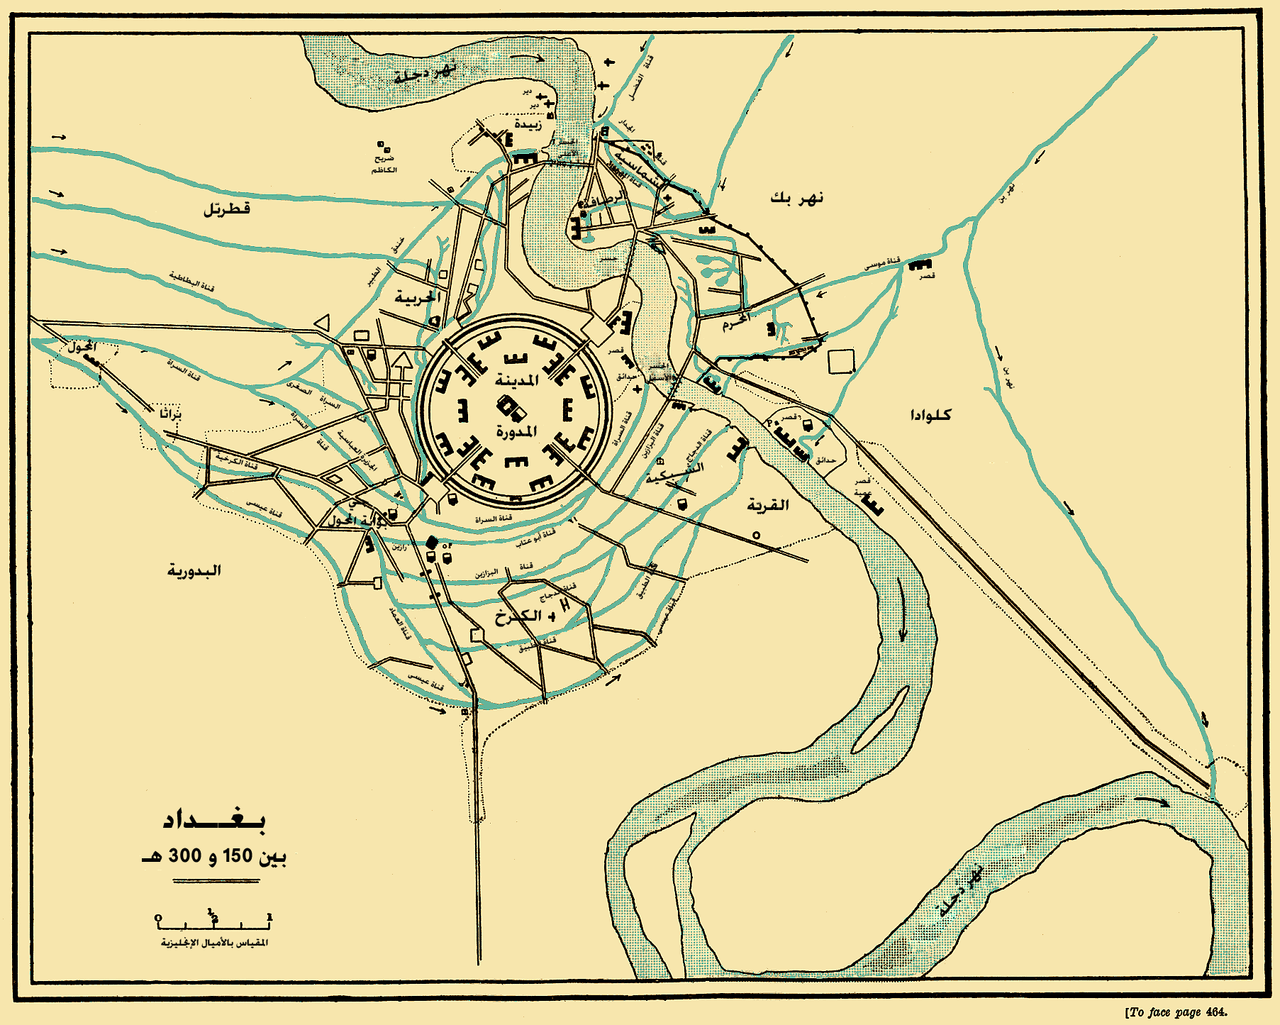 مخطط بناء بغداد وتوسعها بين عامي 767 و912م الموافق 150 و300هـ.